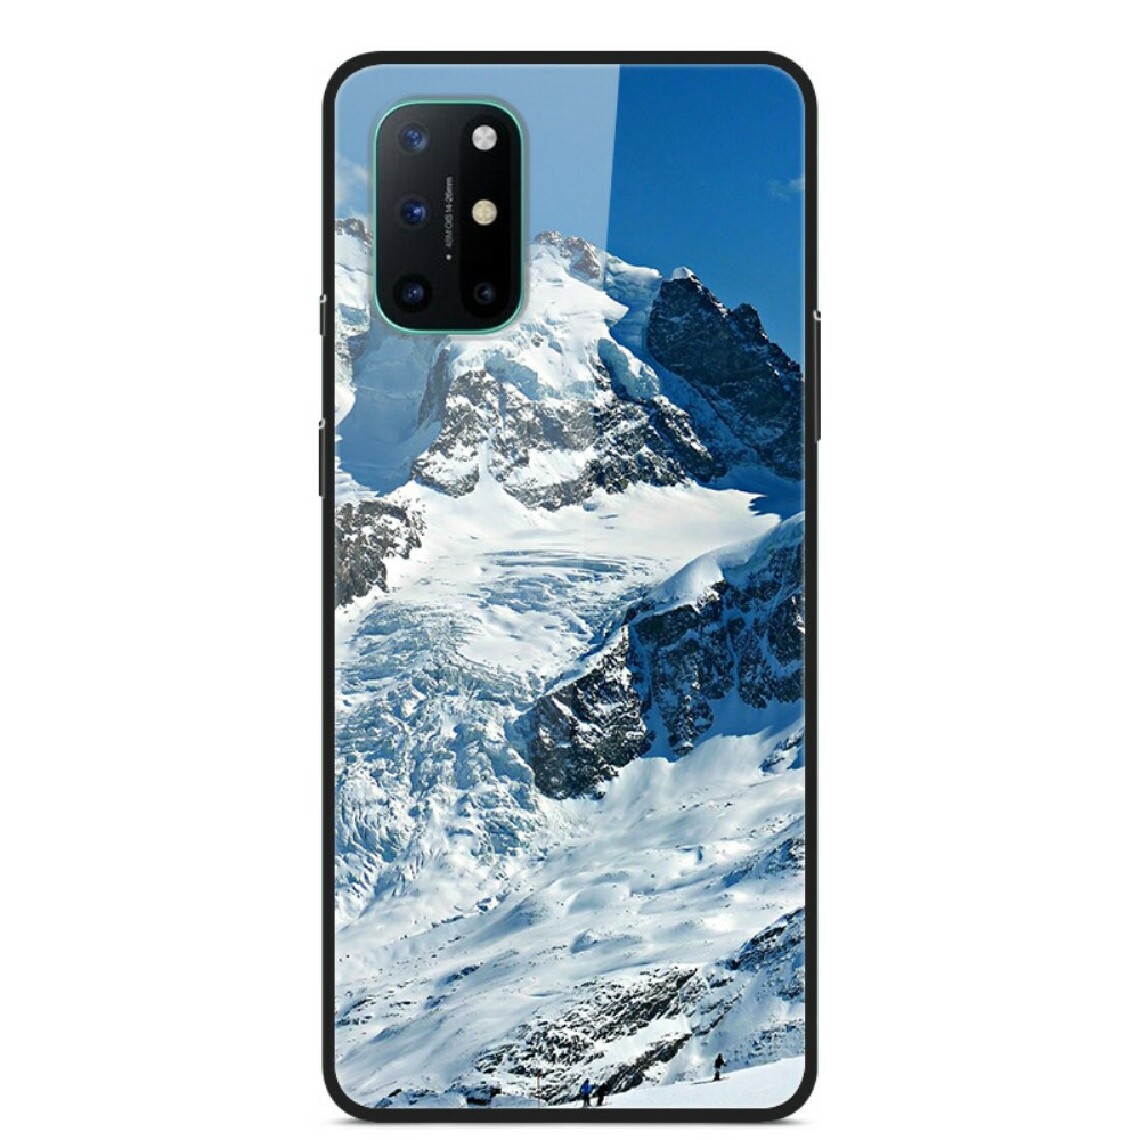 Other - Coque en TPU combinaison de verre d'impression de motif montagne enneigée pour votre OnePlus 8T - Coque, étui smartphone